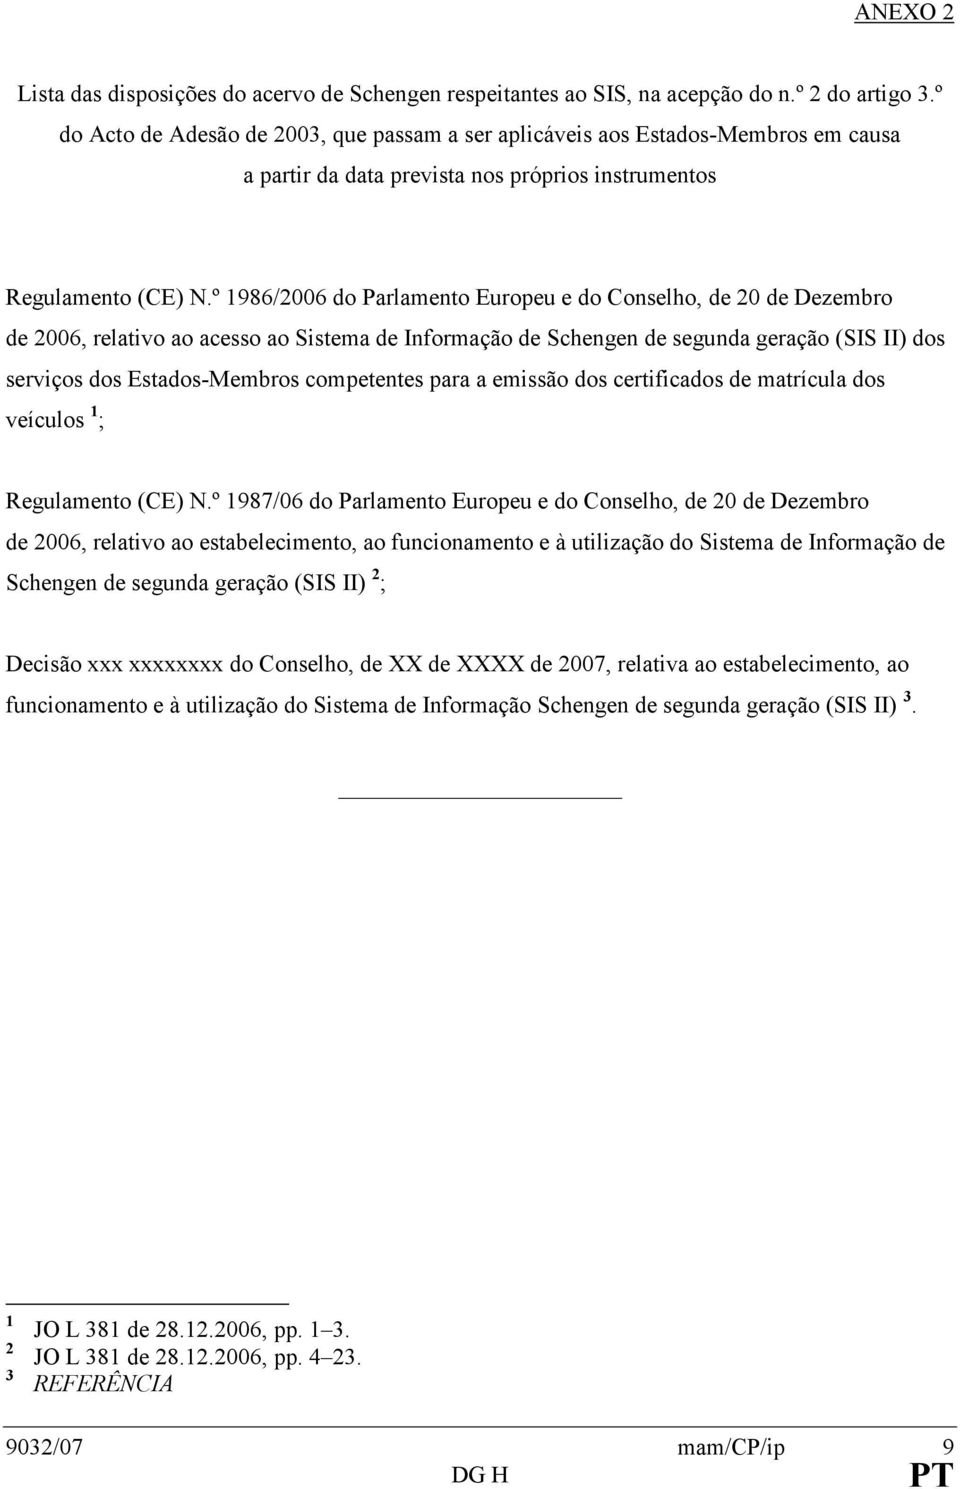 º 1986/2006 do Parlamento Europeu e do Conselho, de 20 de Dezembro de 2006, relativo ao acesso ao Sistema de Informação de Schengen de segunda geração (SIS II) dos serviços dos Estados-Membros